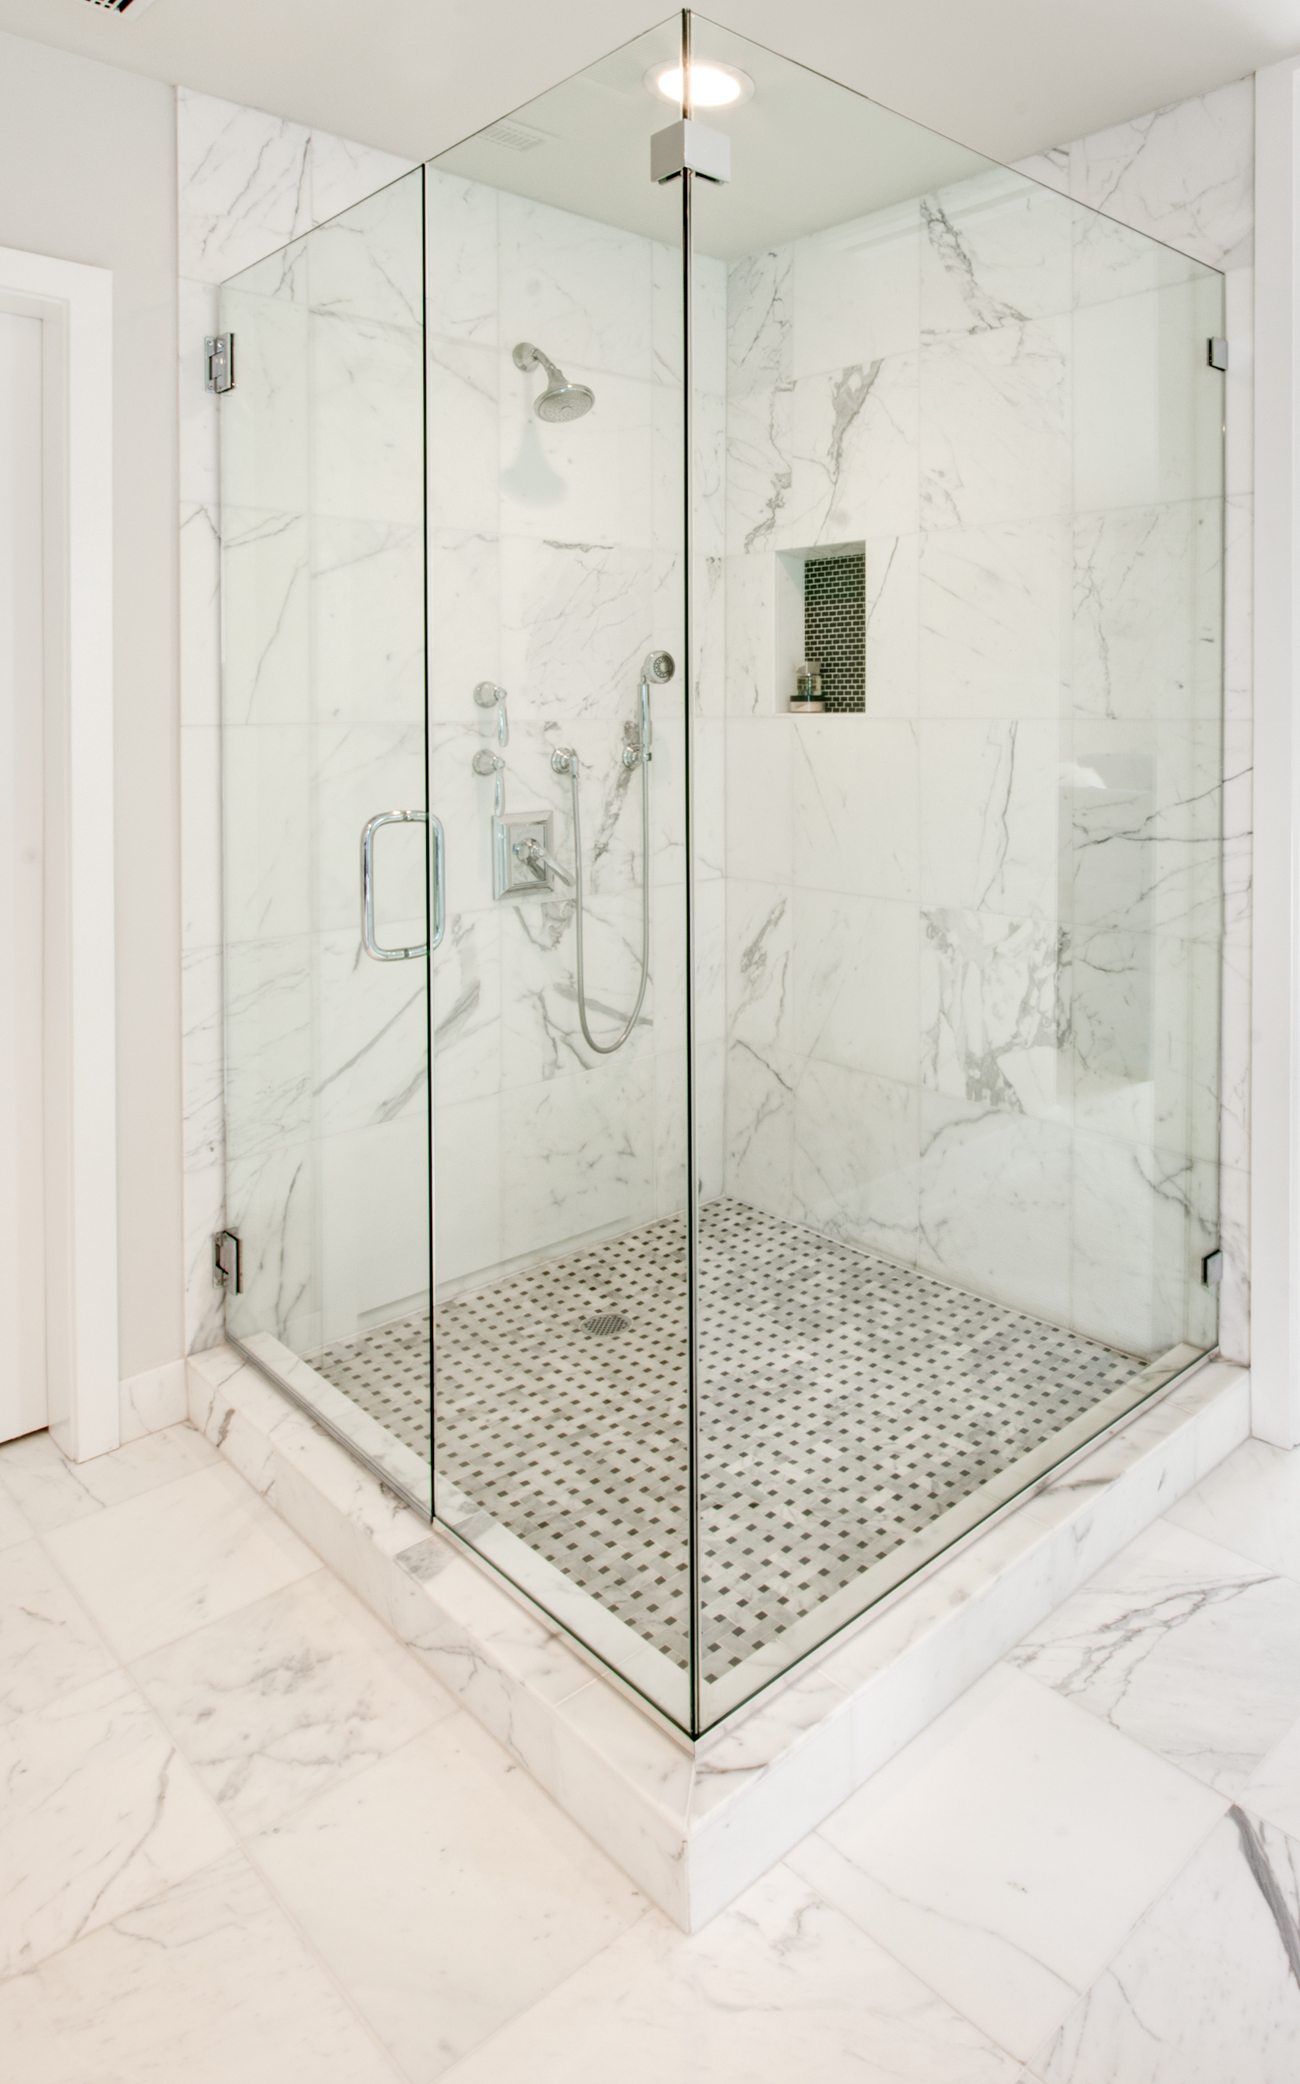 White Marble Bathroom Tile in Shower